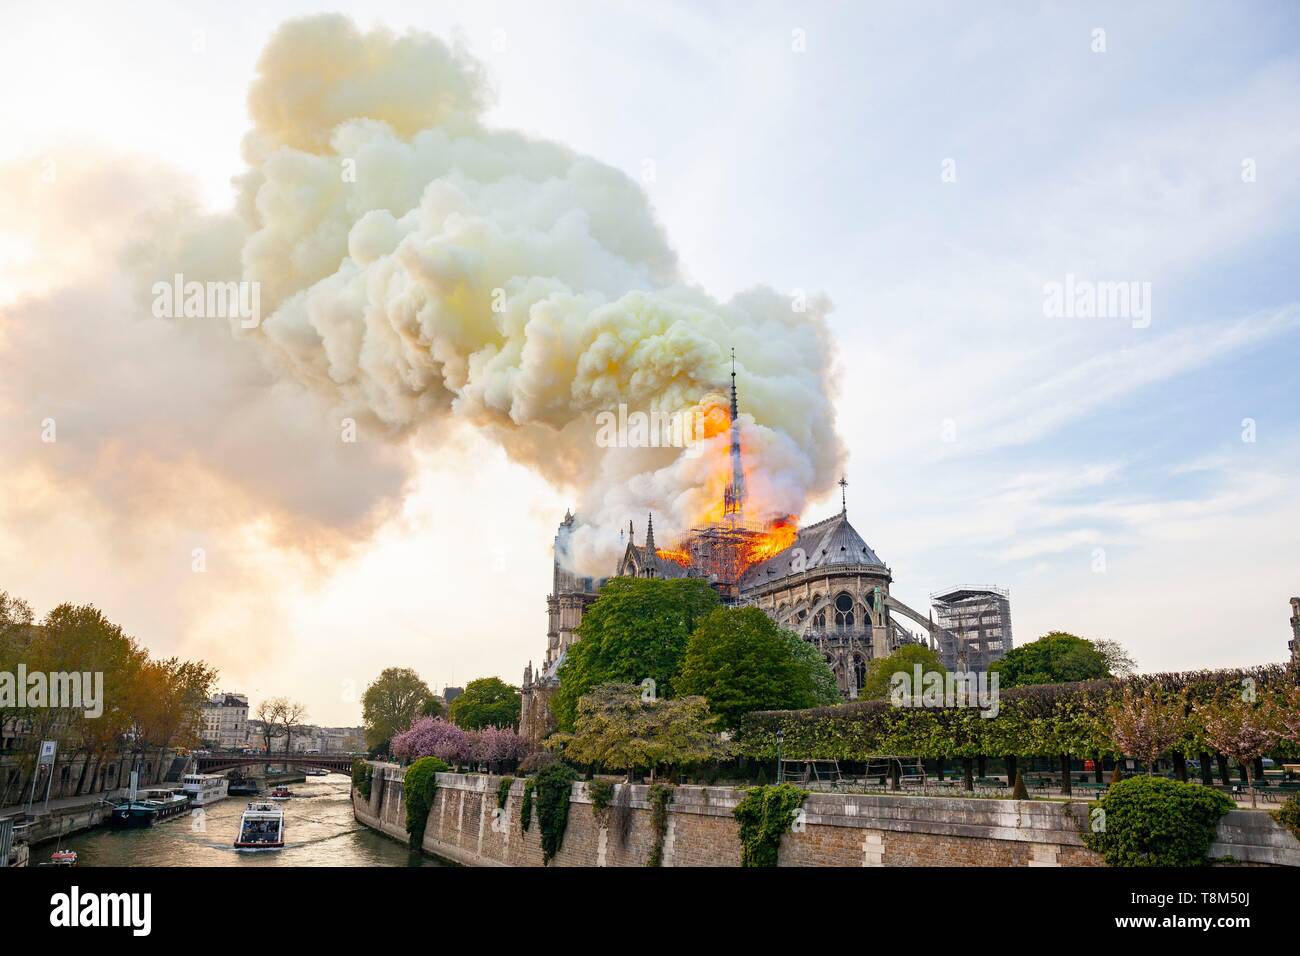 Francia, Parigi, zona elencata come patrimonio mondiale dall' UNESCO, Ile de la Cite, la cattedrale di Notre Dame de Paris, incendio che devastò la cattedrale il 15 aprile 2019 Foto Stock